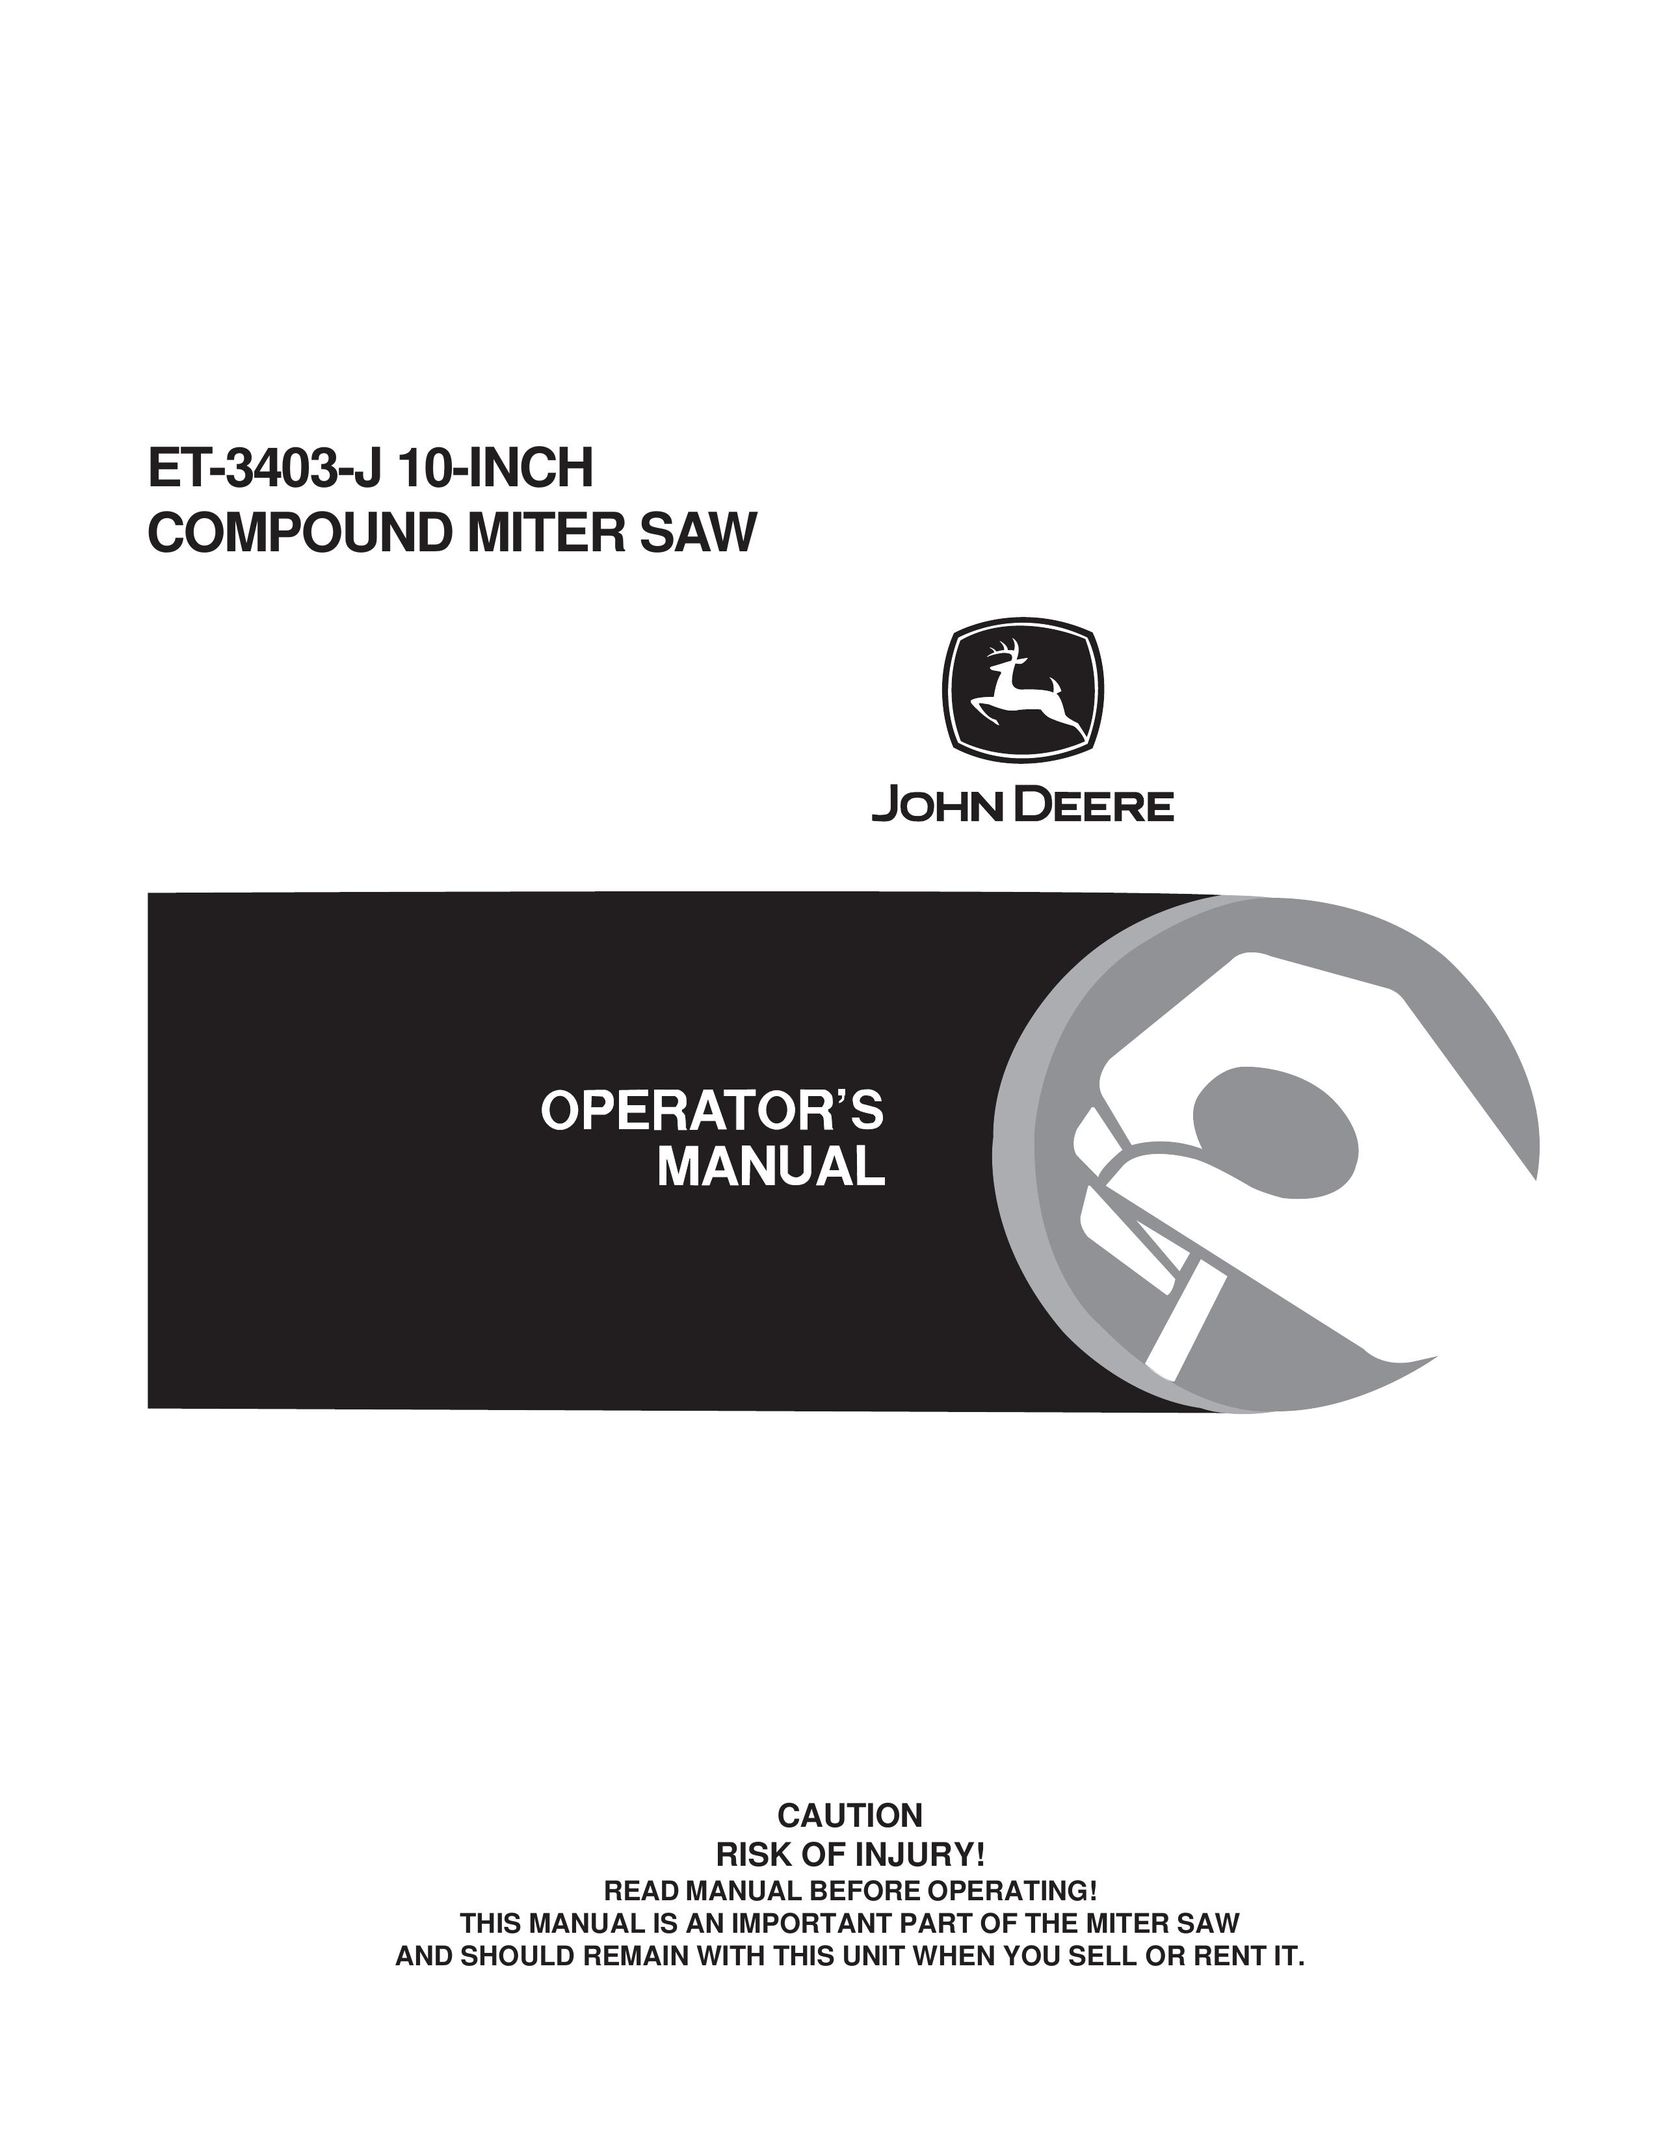 John Deere ET-3403-J Saw User Manual